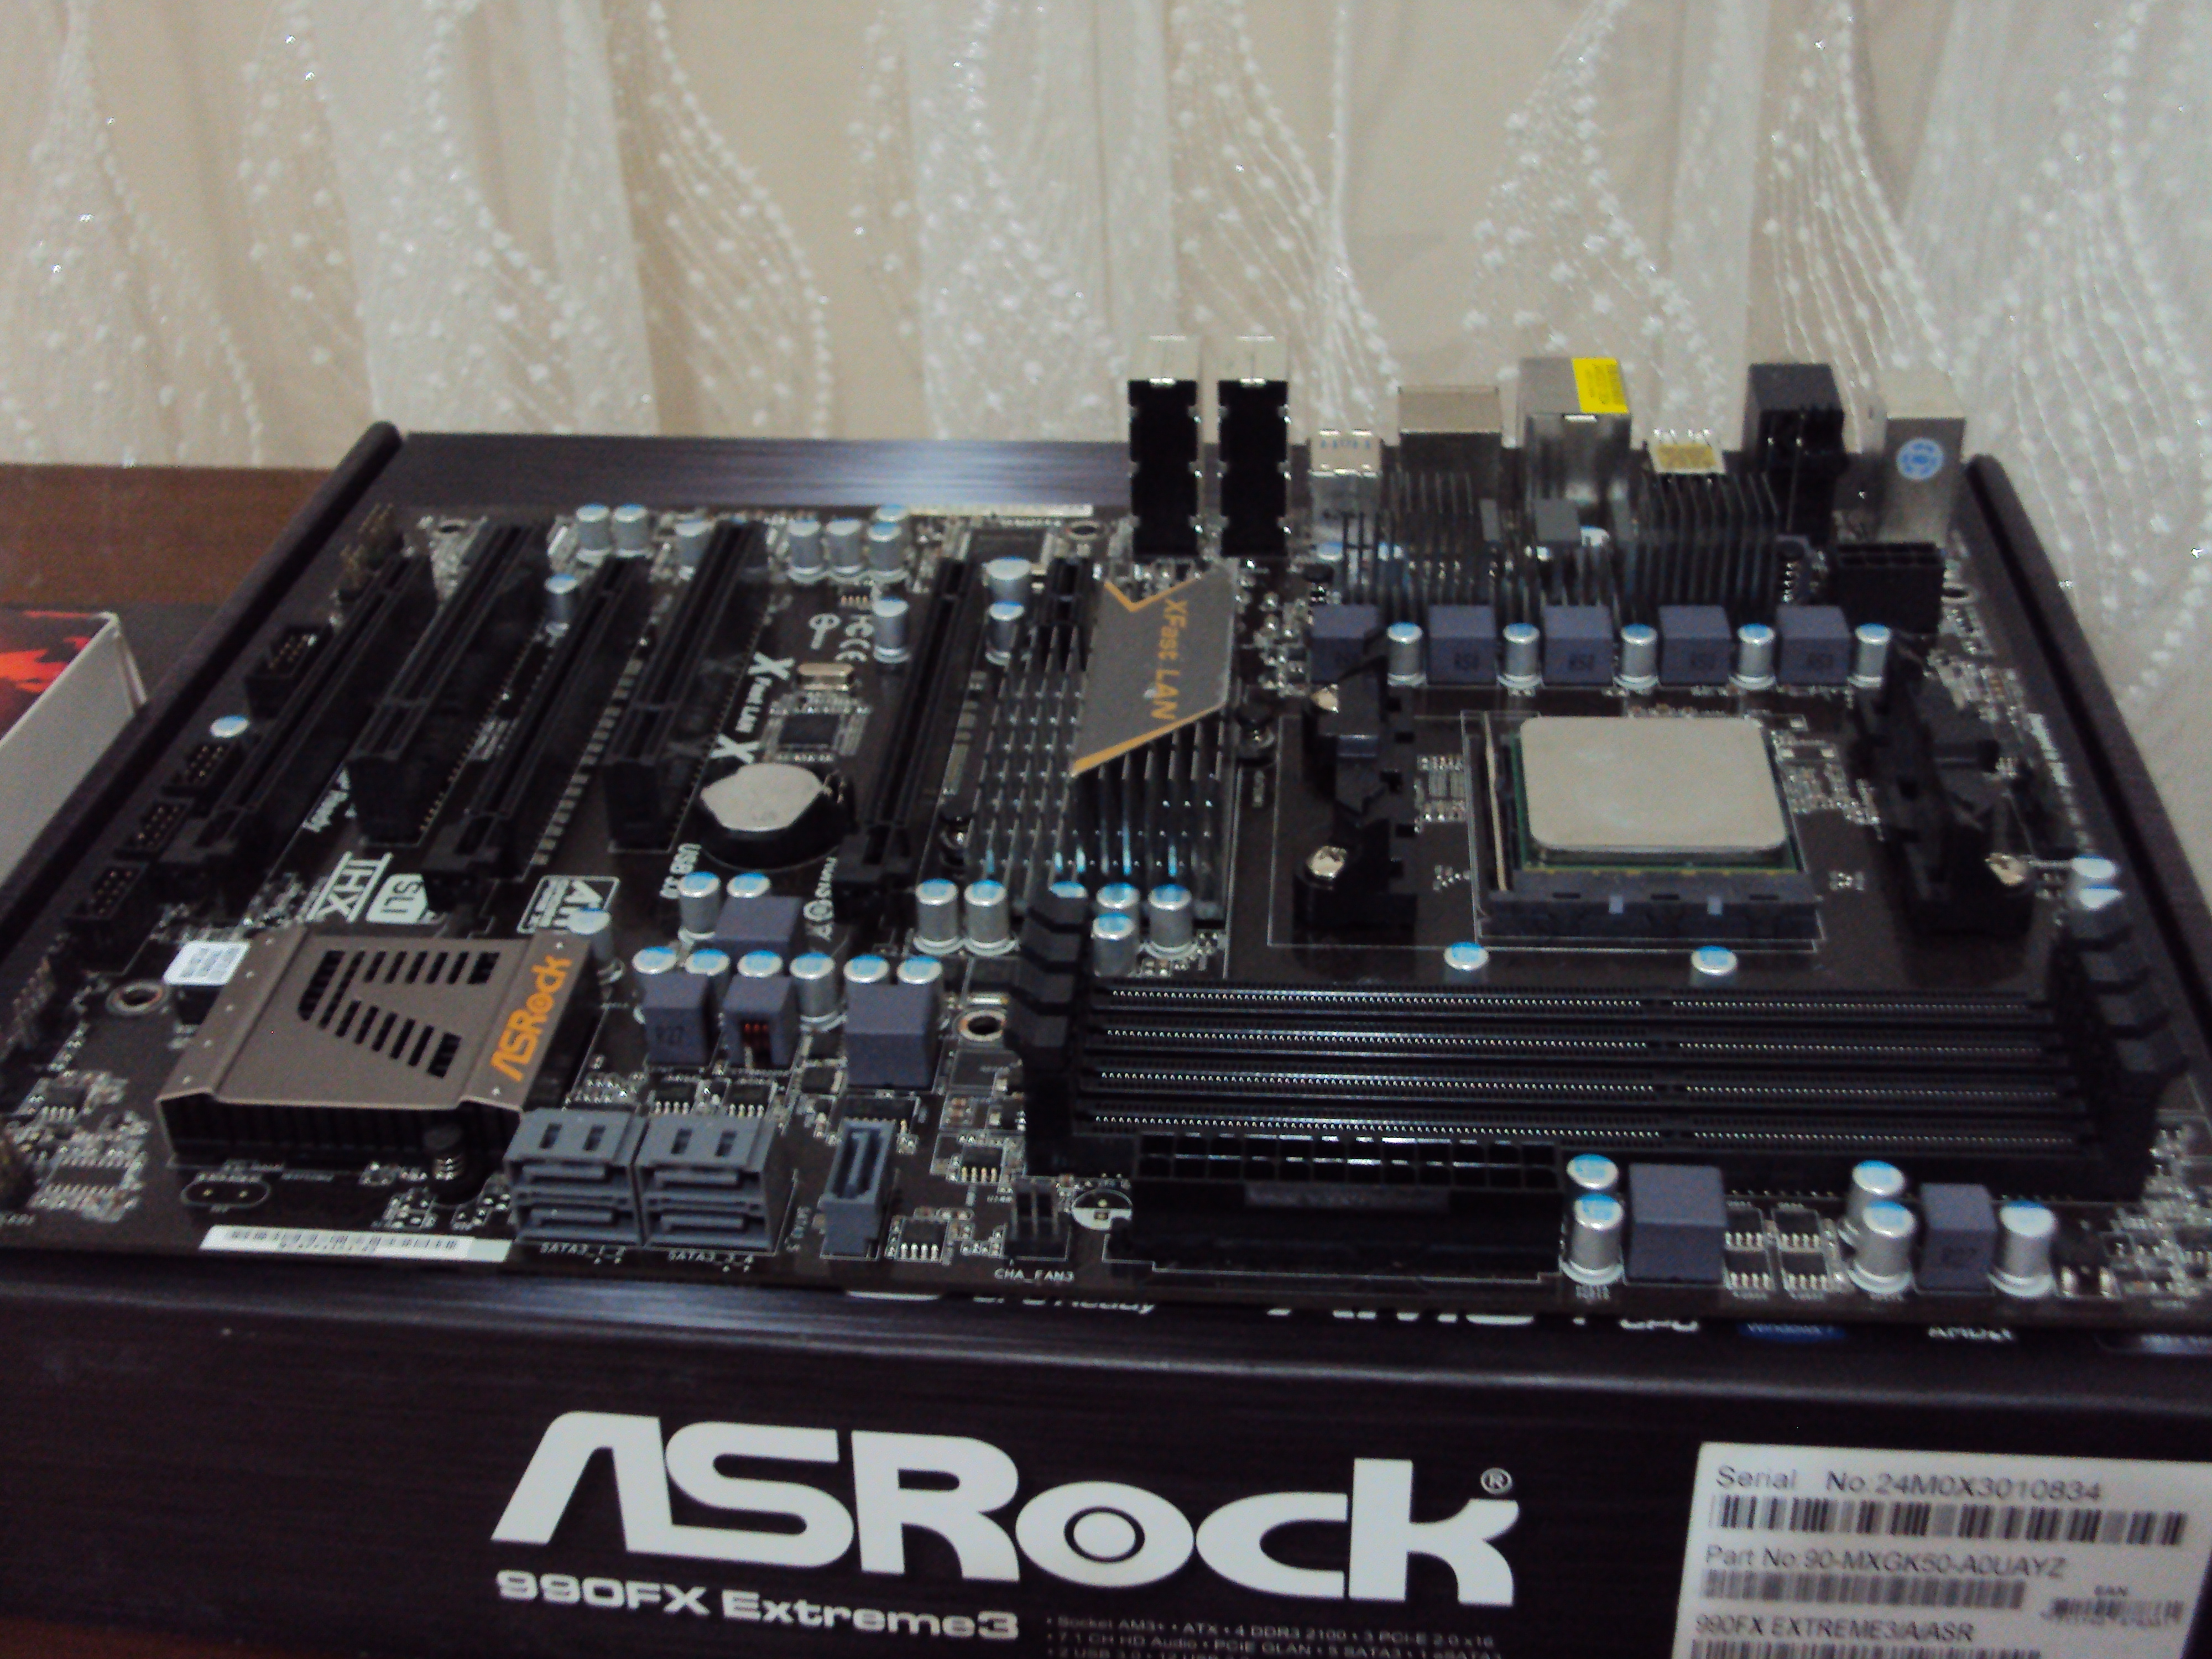  SATILDI  Asrock 990FX Extreme3 AMD 990FX AM3+ DDR3